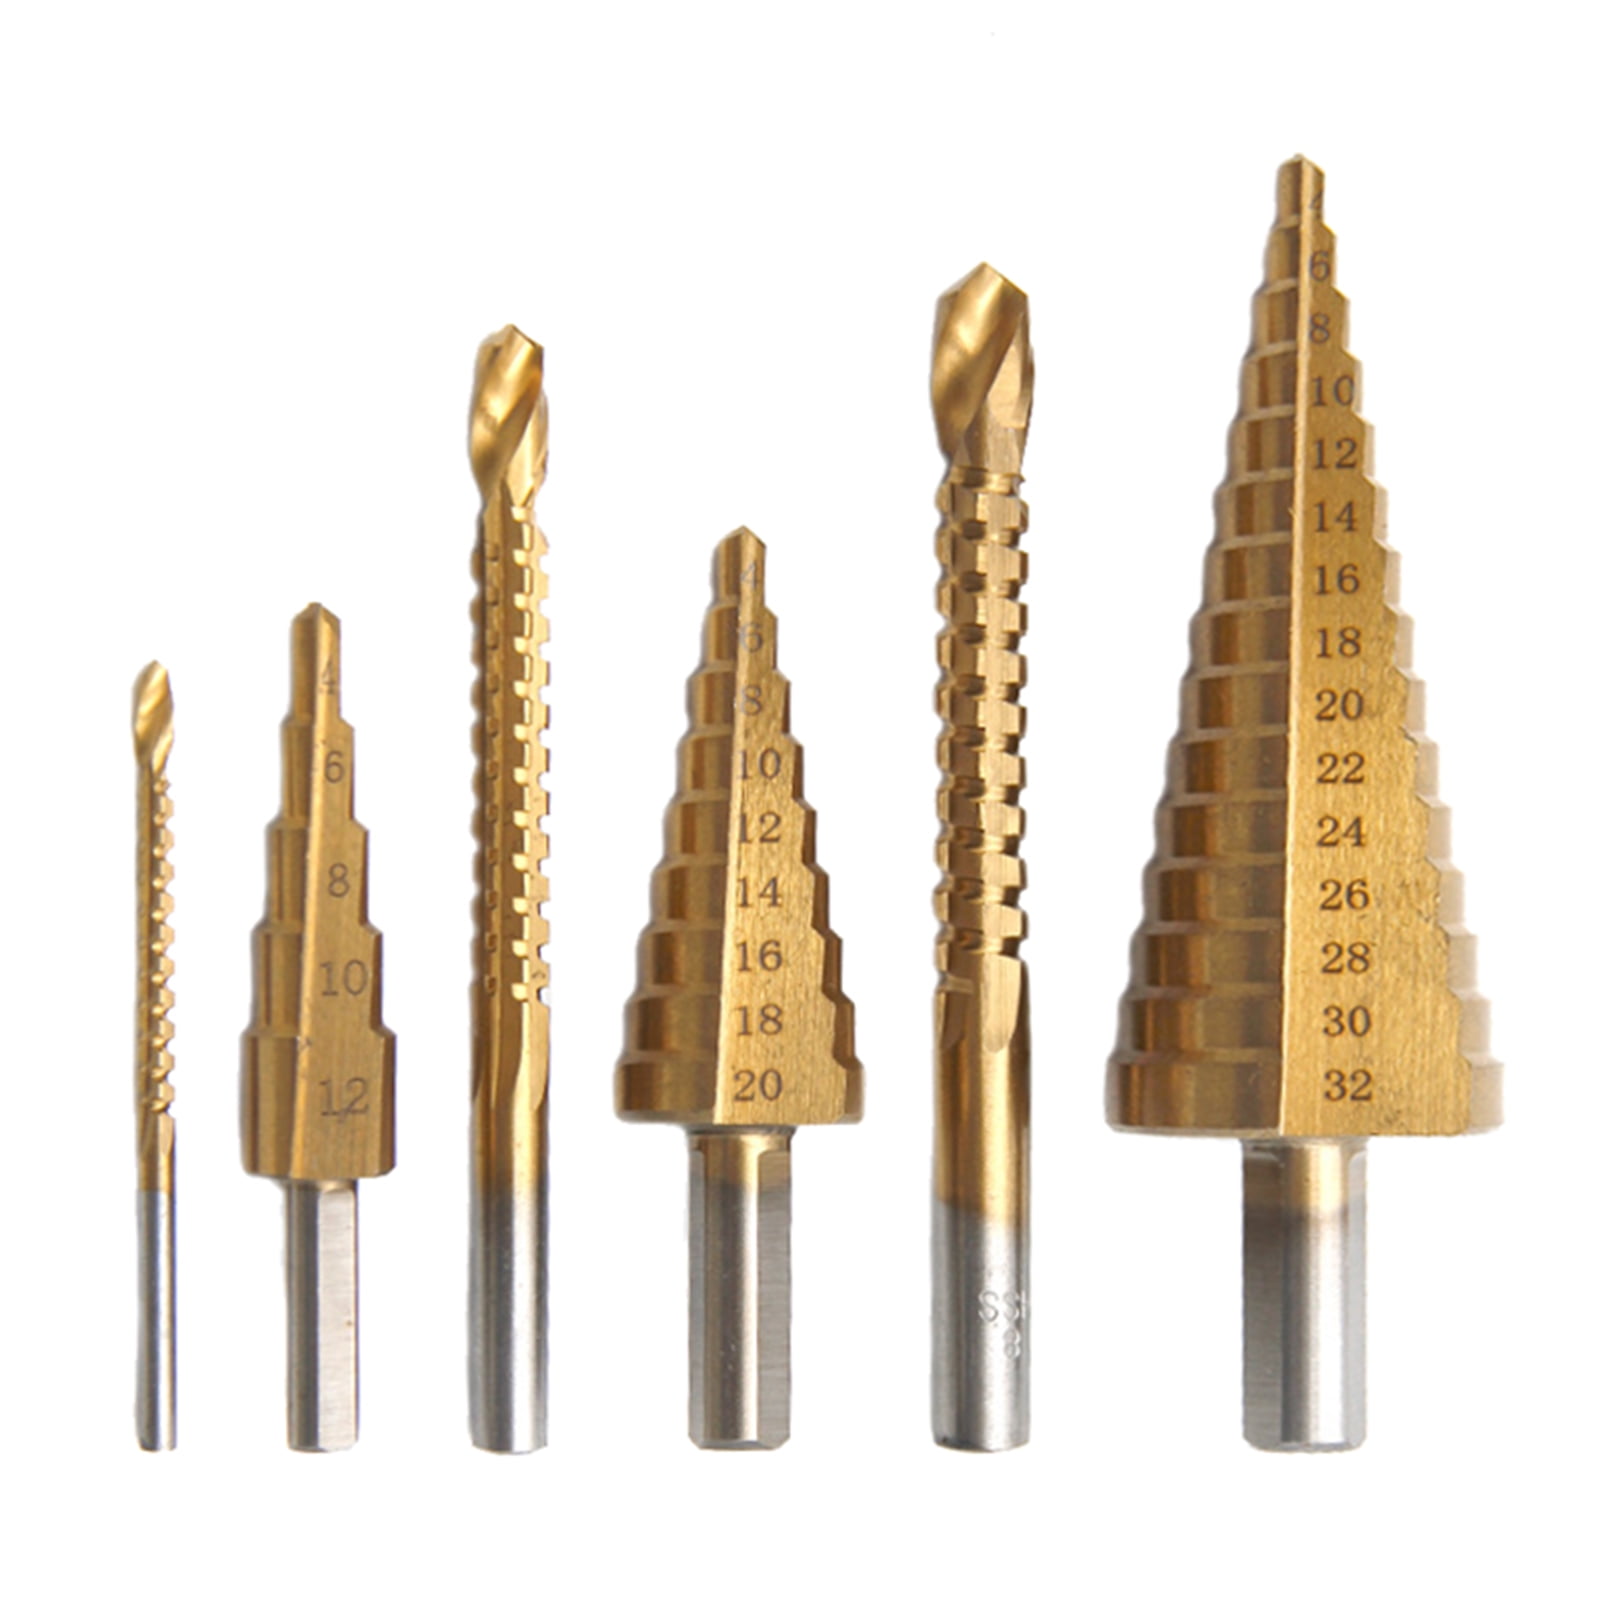 6pcs Durable HSS Steel Drill Saw Bit Set Cutting Metal Wood Craft Tool 3mm-8mm 